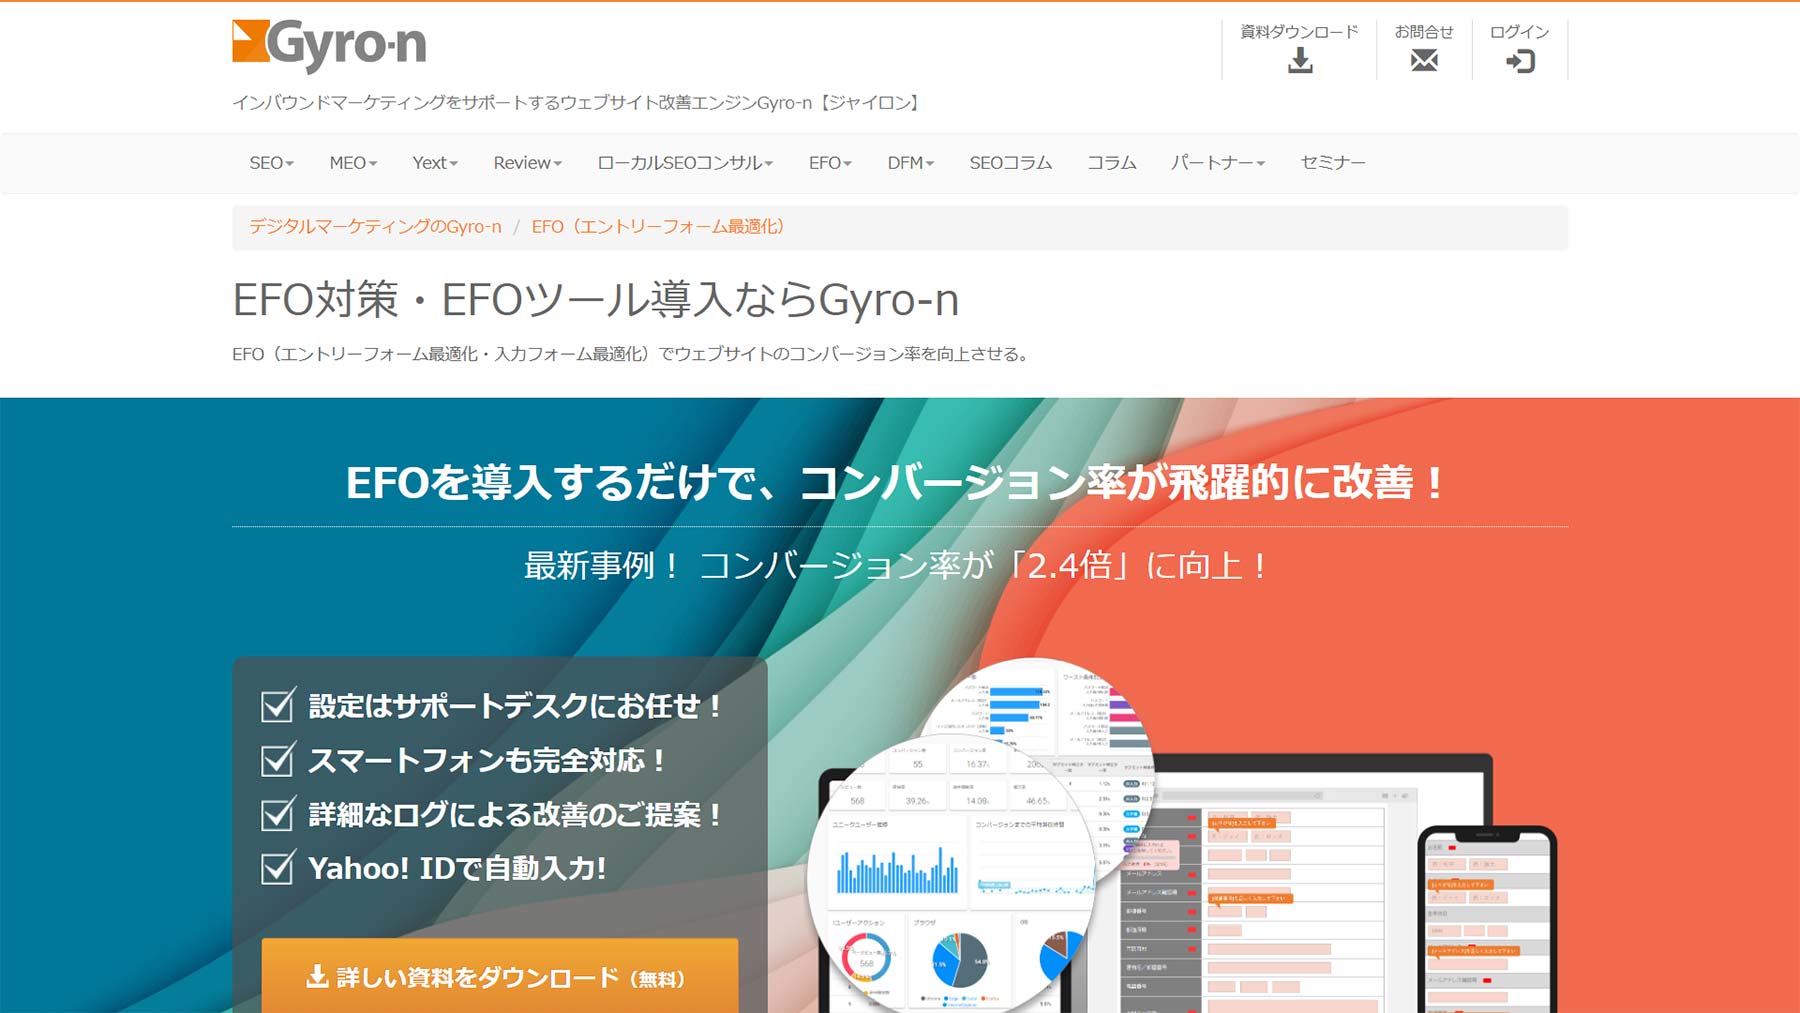 Gyro-n EFO公式Webサイト